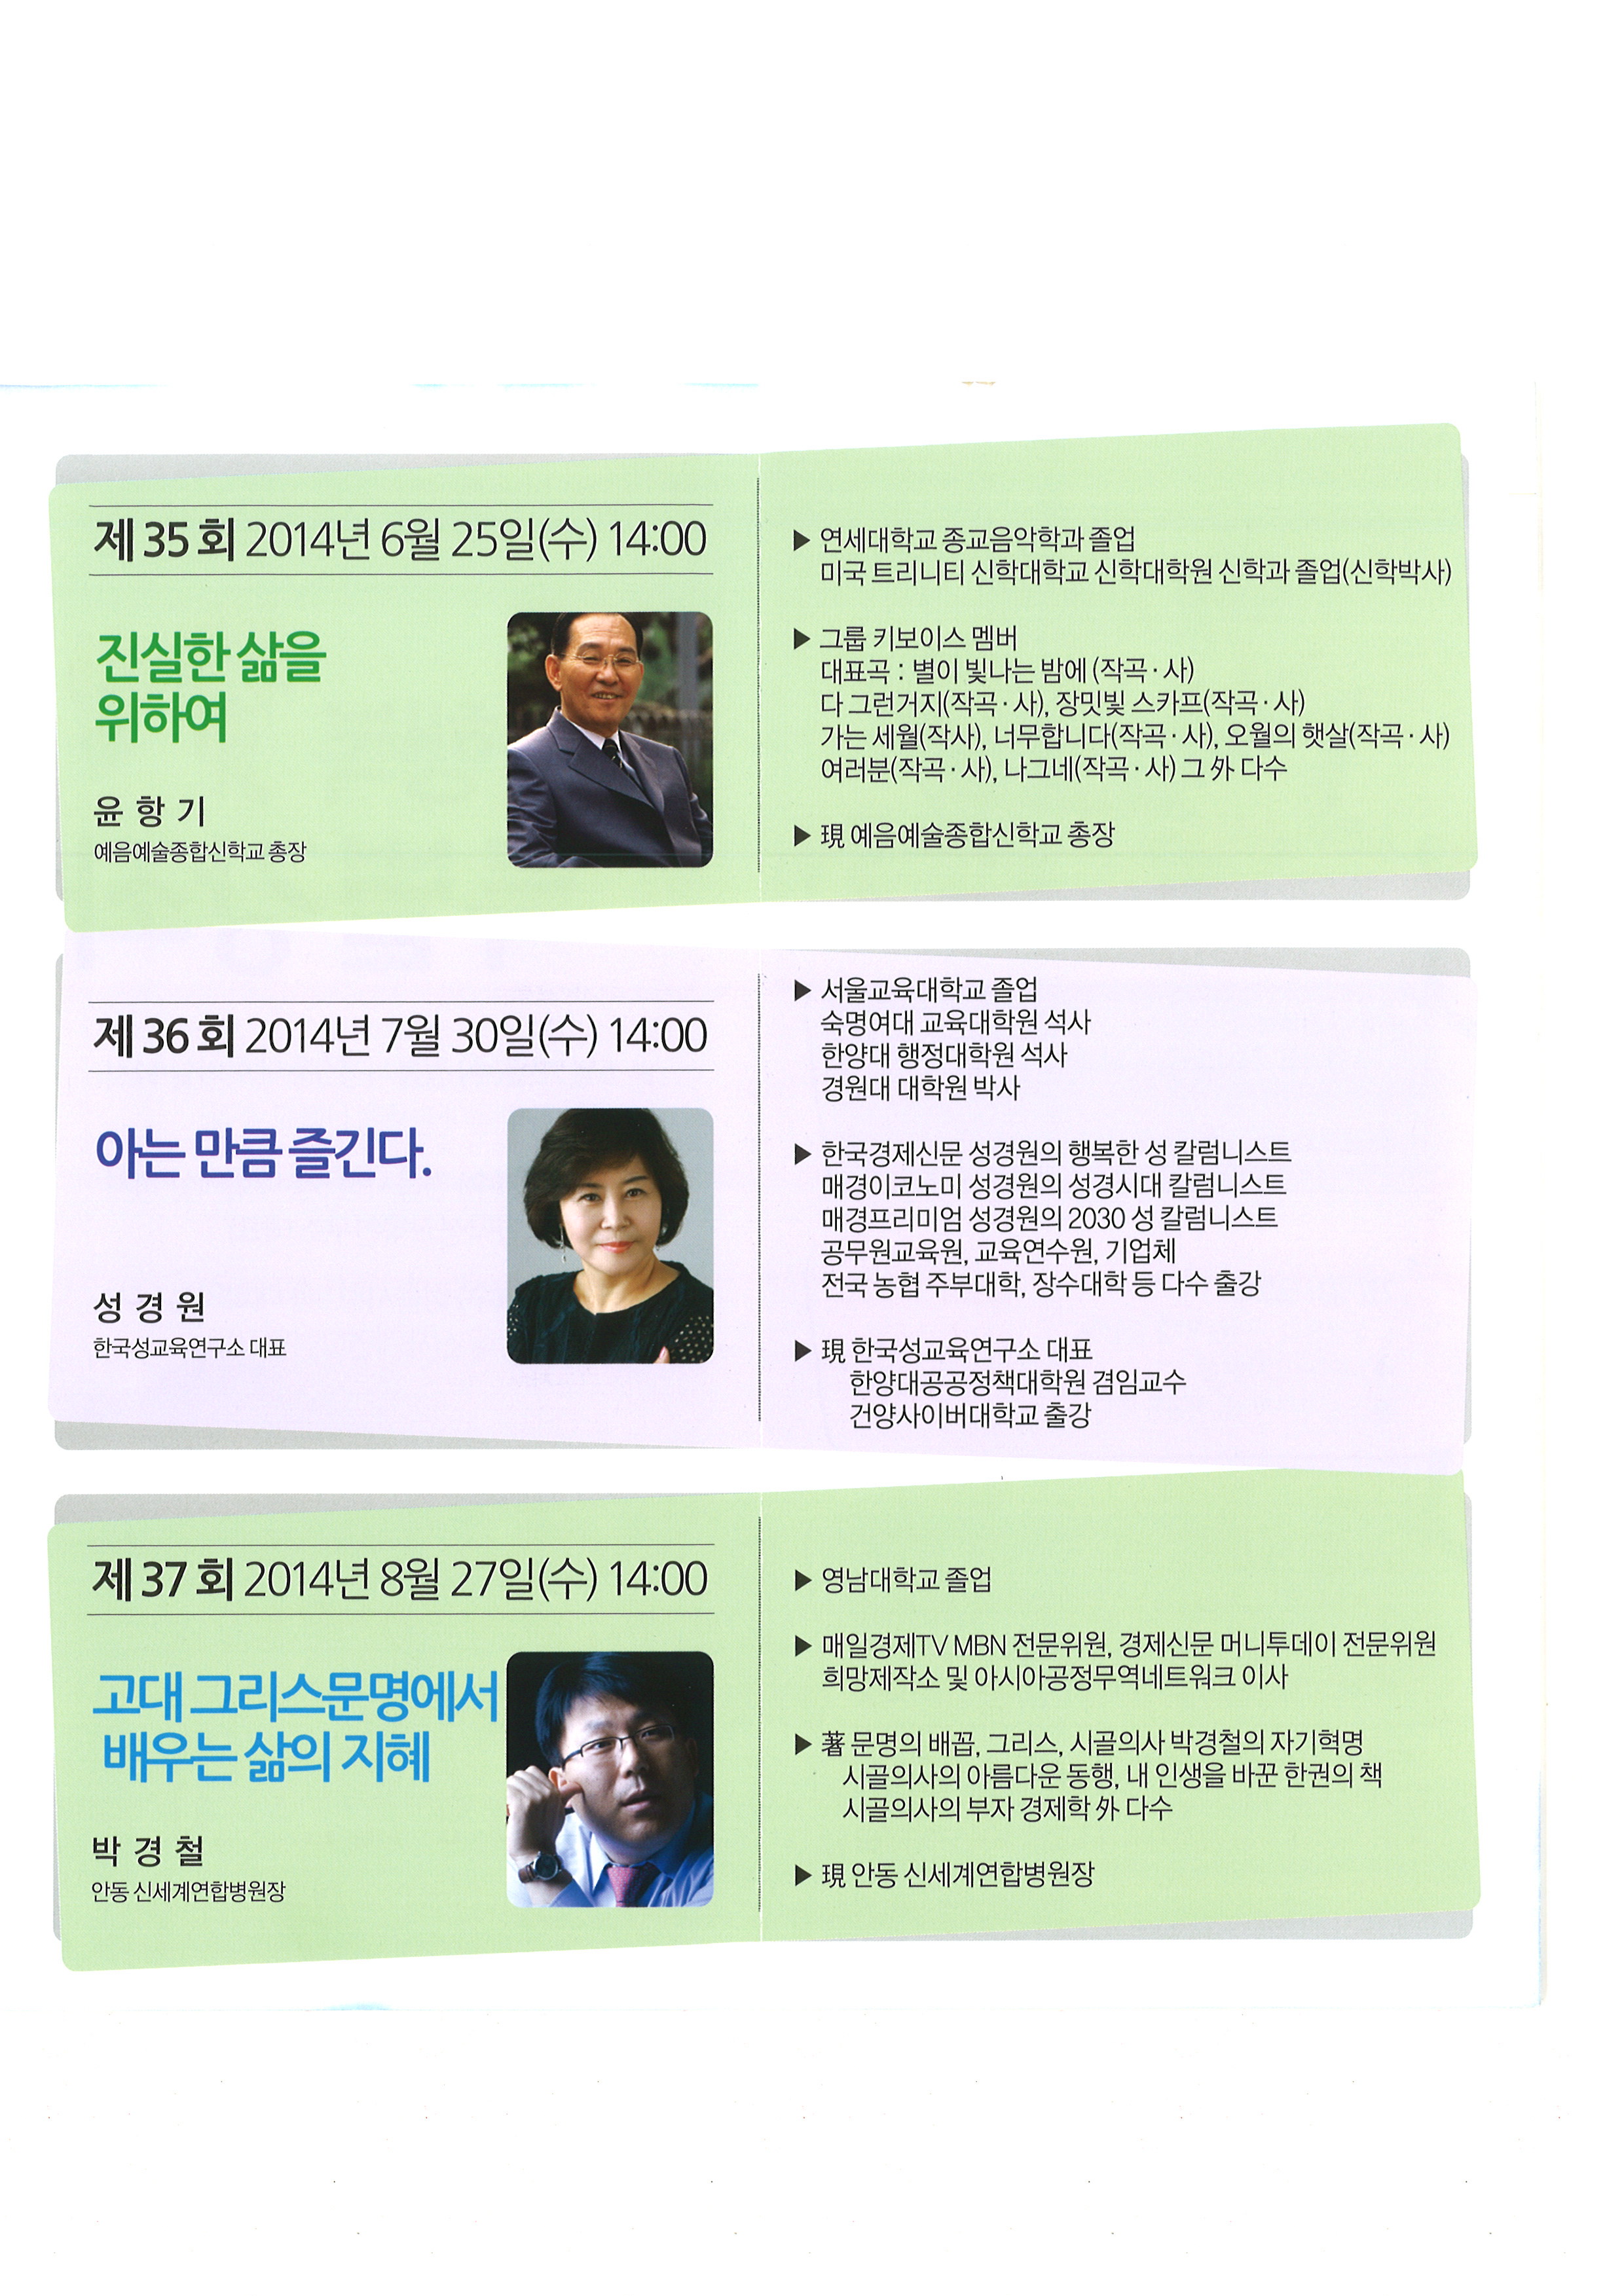 제37회 시민행복 특별강좌 홍보